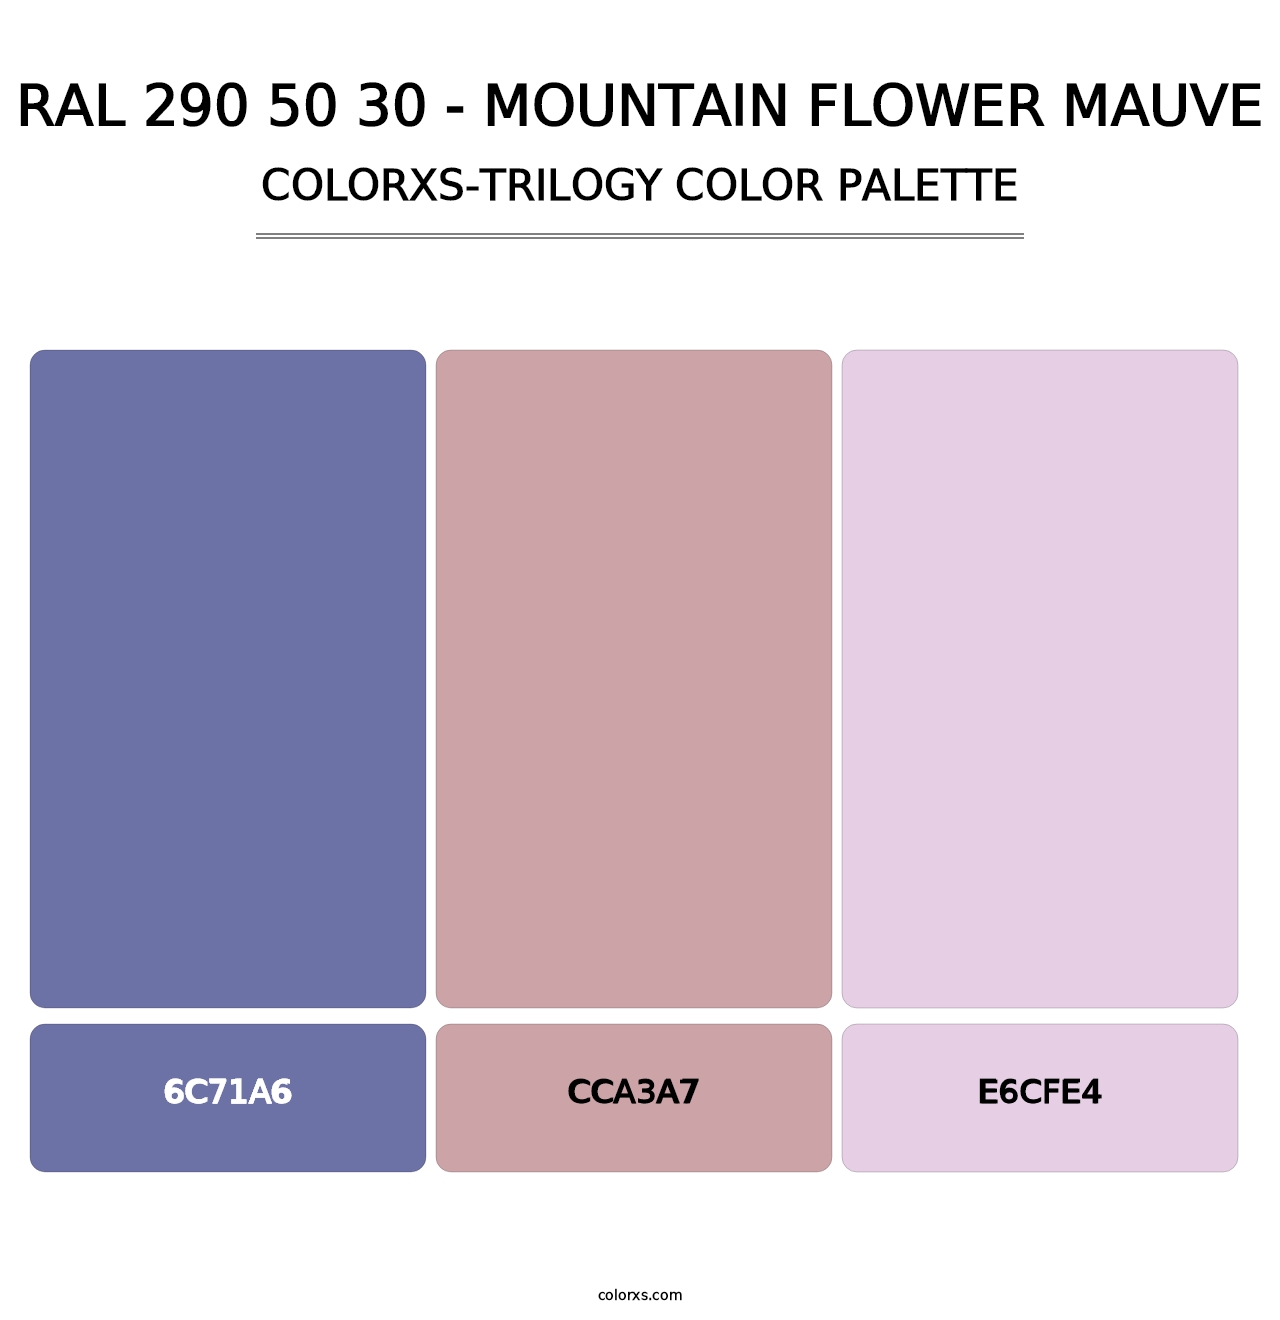 RAL 290 50 30 - Mountain Flower Mauve - Colorxs Trilogy Palette